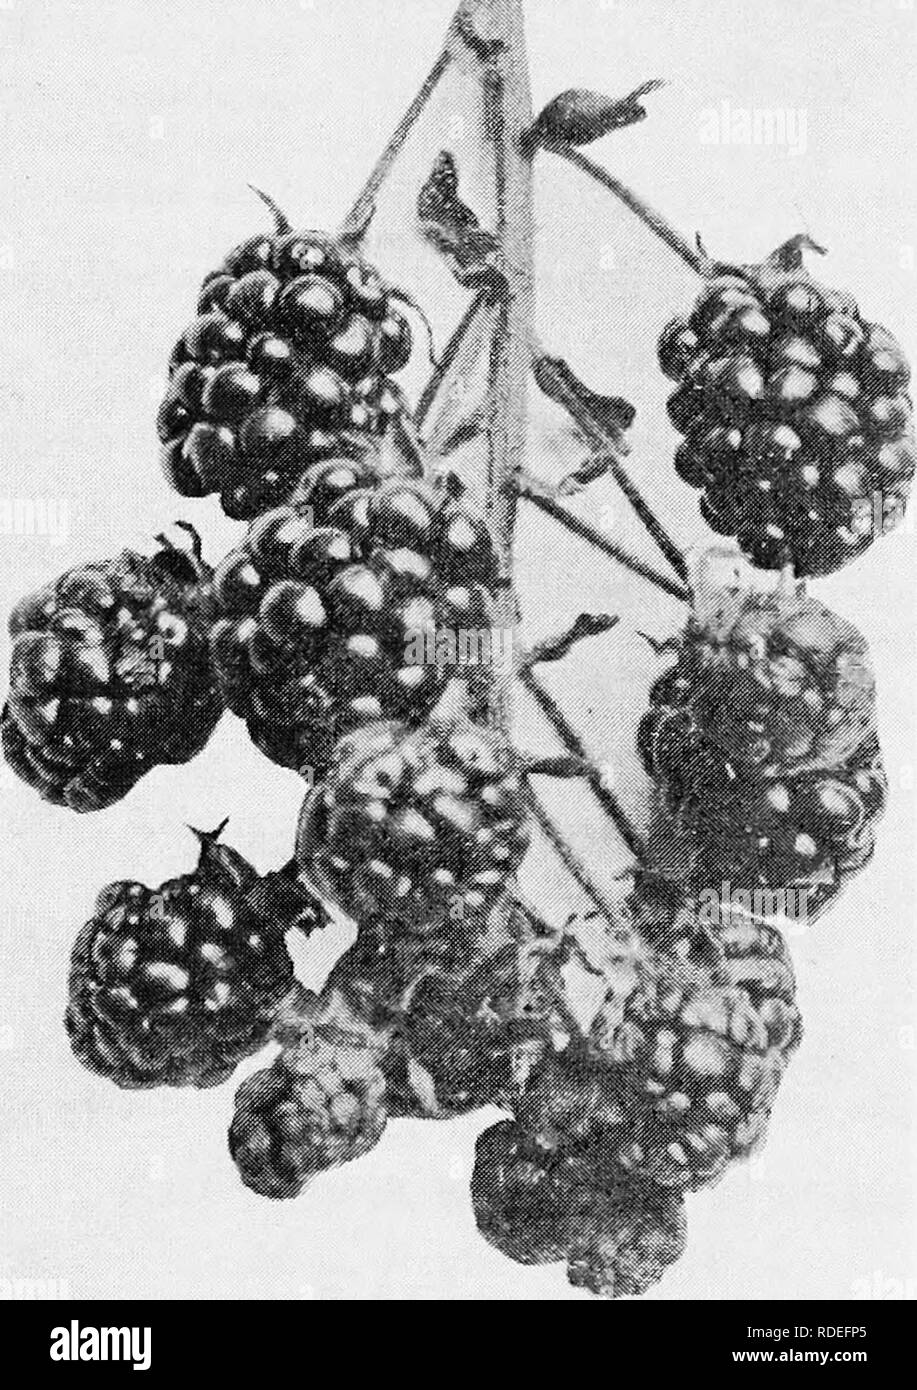 Die Früchte von Ontario. Obst - Kultur. 1905 Obst von Ontario. 223 Lawton.  Eine Vielfalt, die die Ha-s viel getan, um die Blackberry als Markt Obst zu  popularisieren, aber jetzt durch